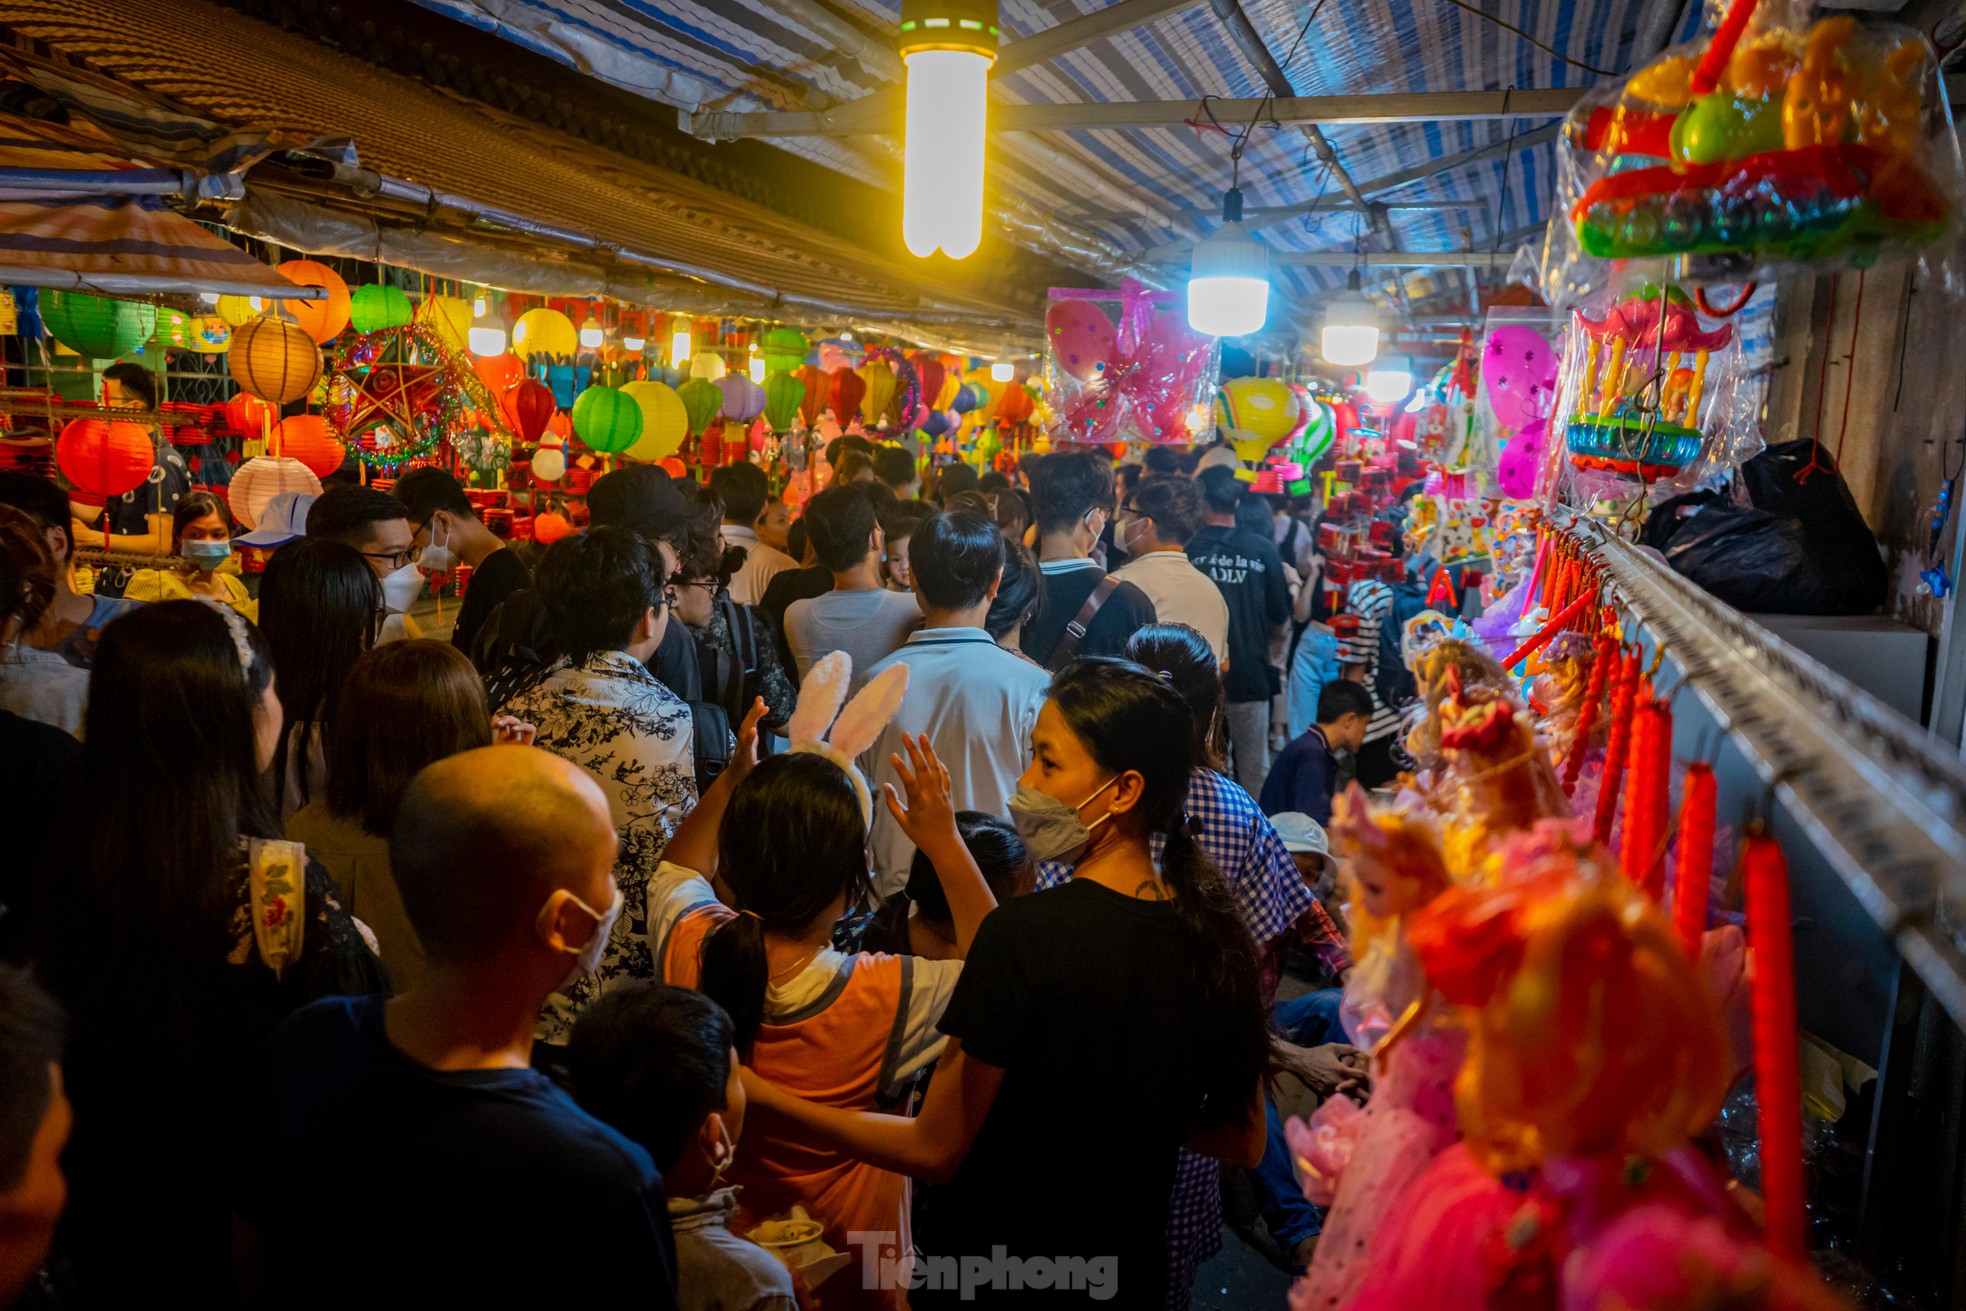 Tối 10/9, phố lồng đèn Lương Nhữ Học trở nên tấp nập khi có rất nhiều người đến tham quan, chụp ảnh và mua sắm.